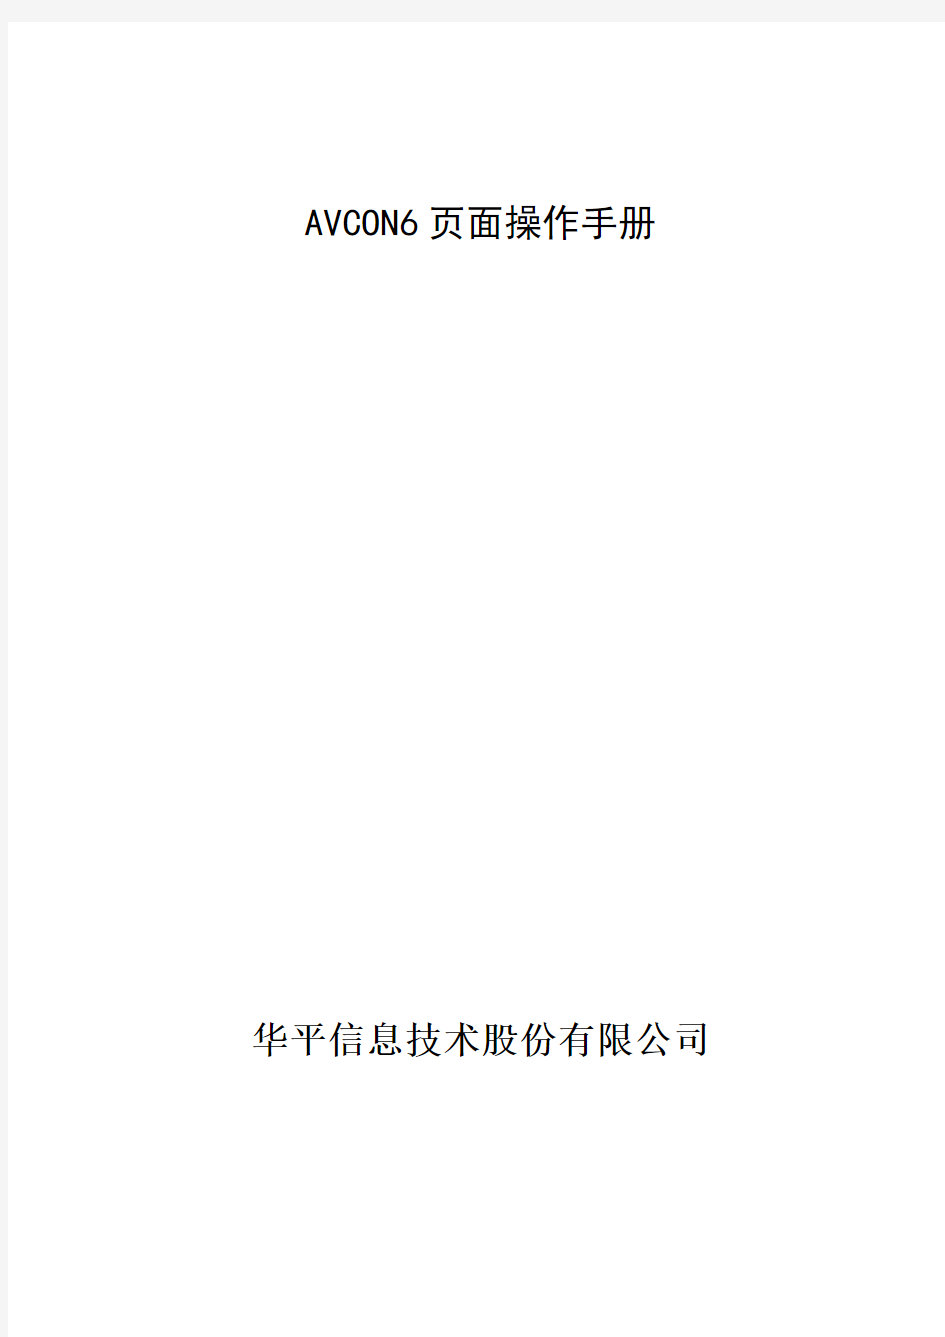 avcon 视频会议系统后台操作